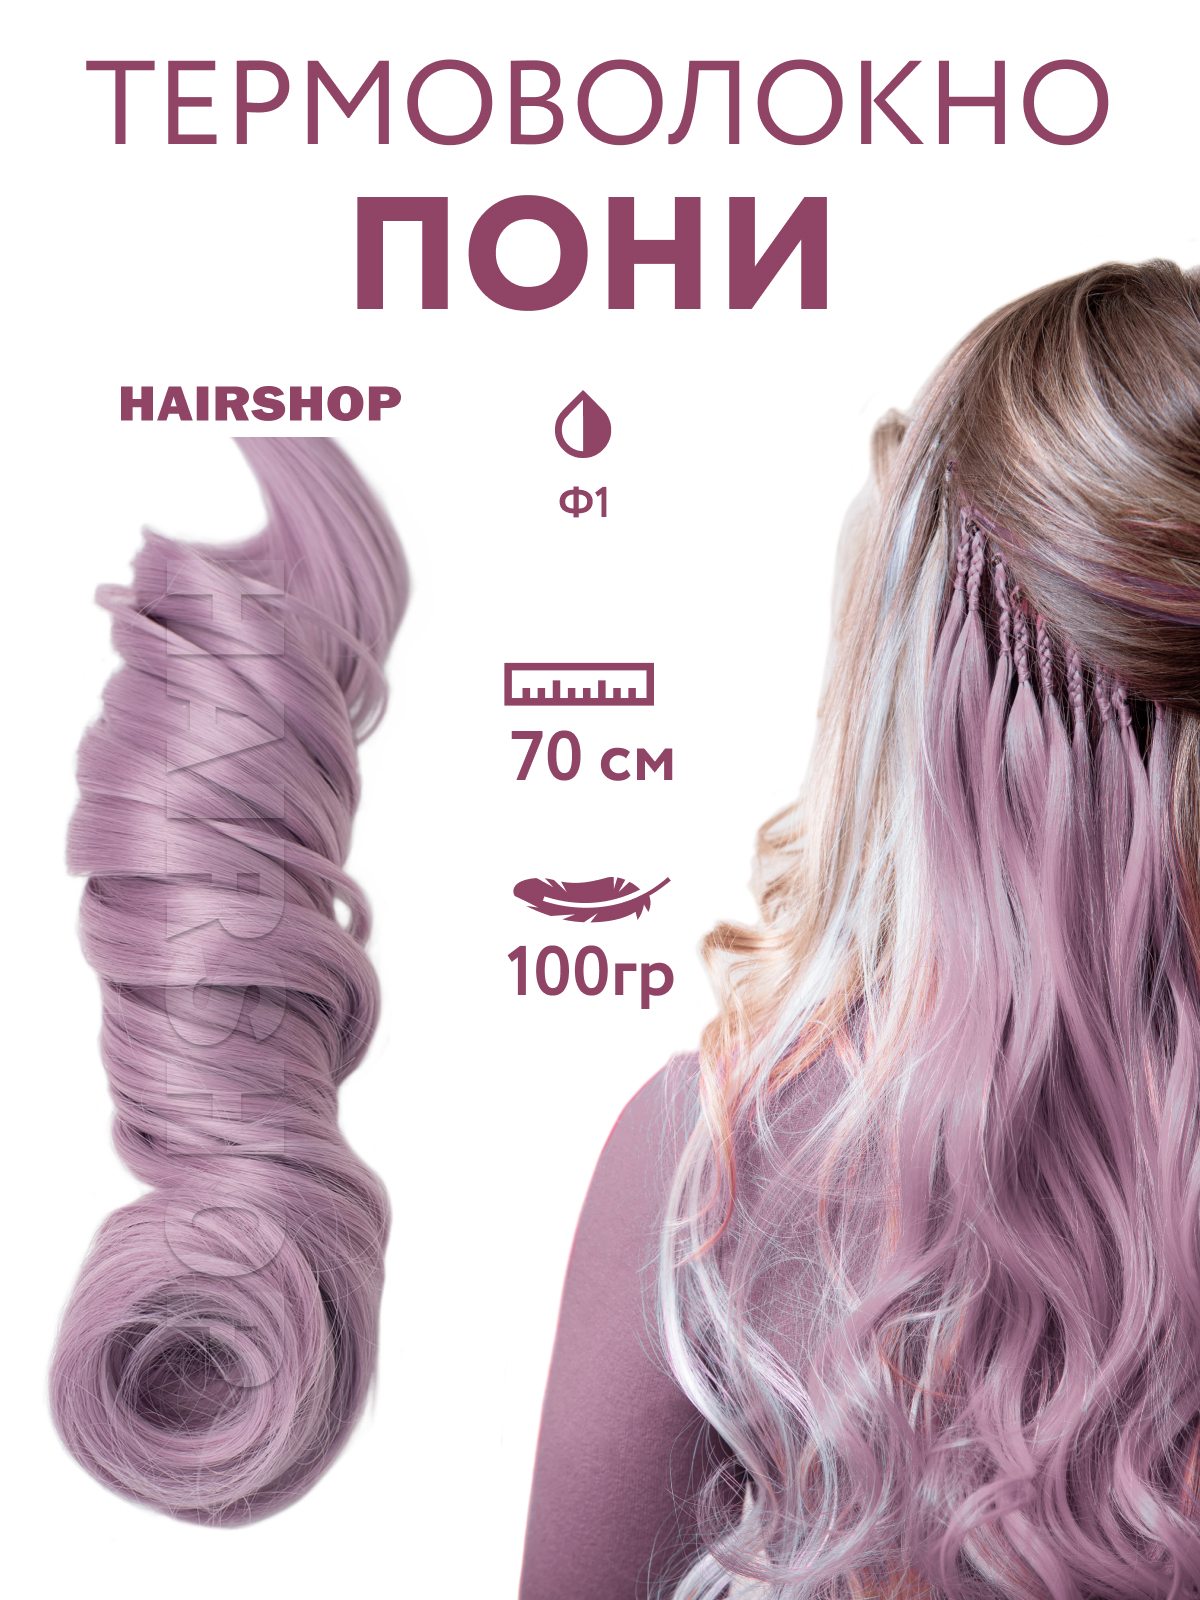 Канекалон HAIRSHOP Пони HairUp для точечного афронаращивания Ф1 Пастельный фиолетовый 1,4м